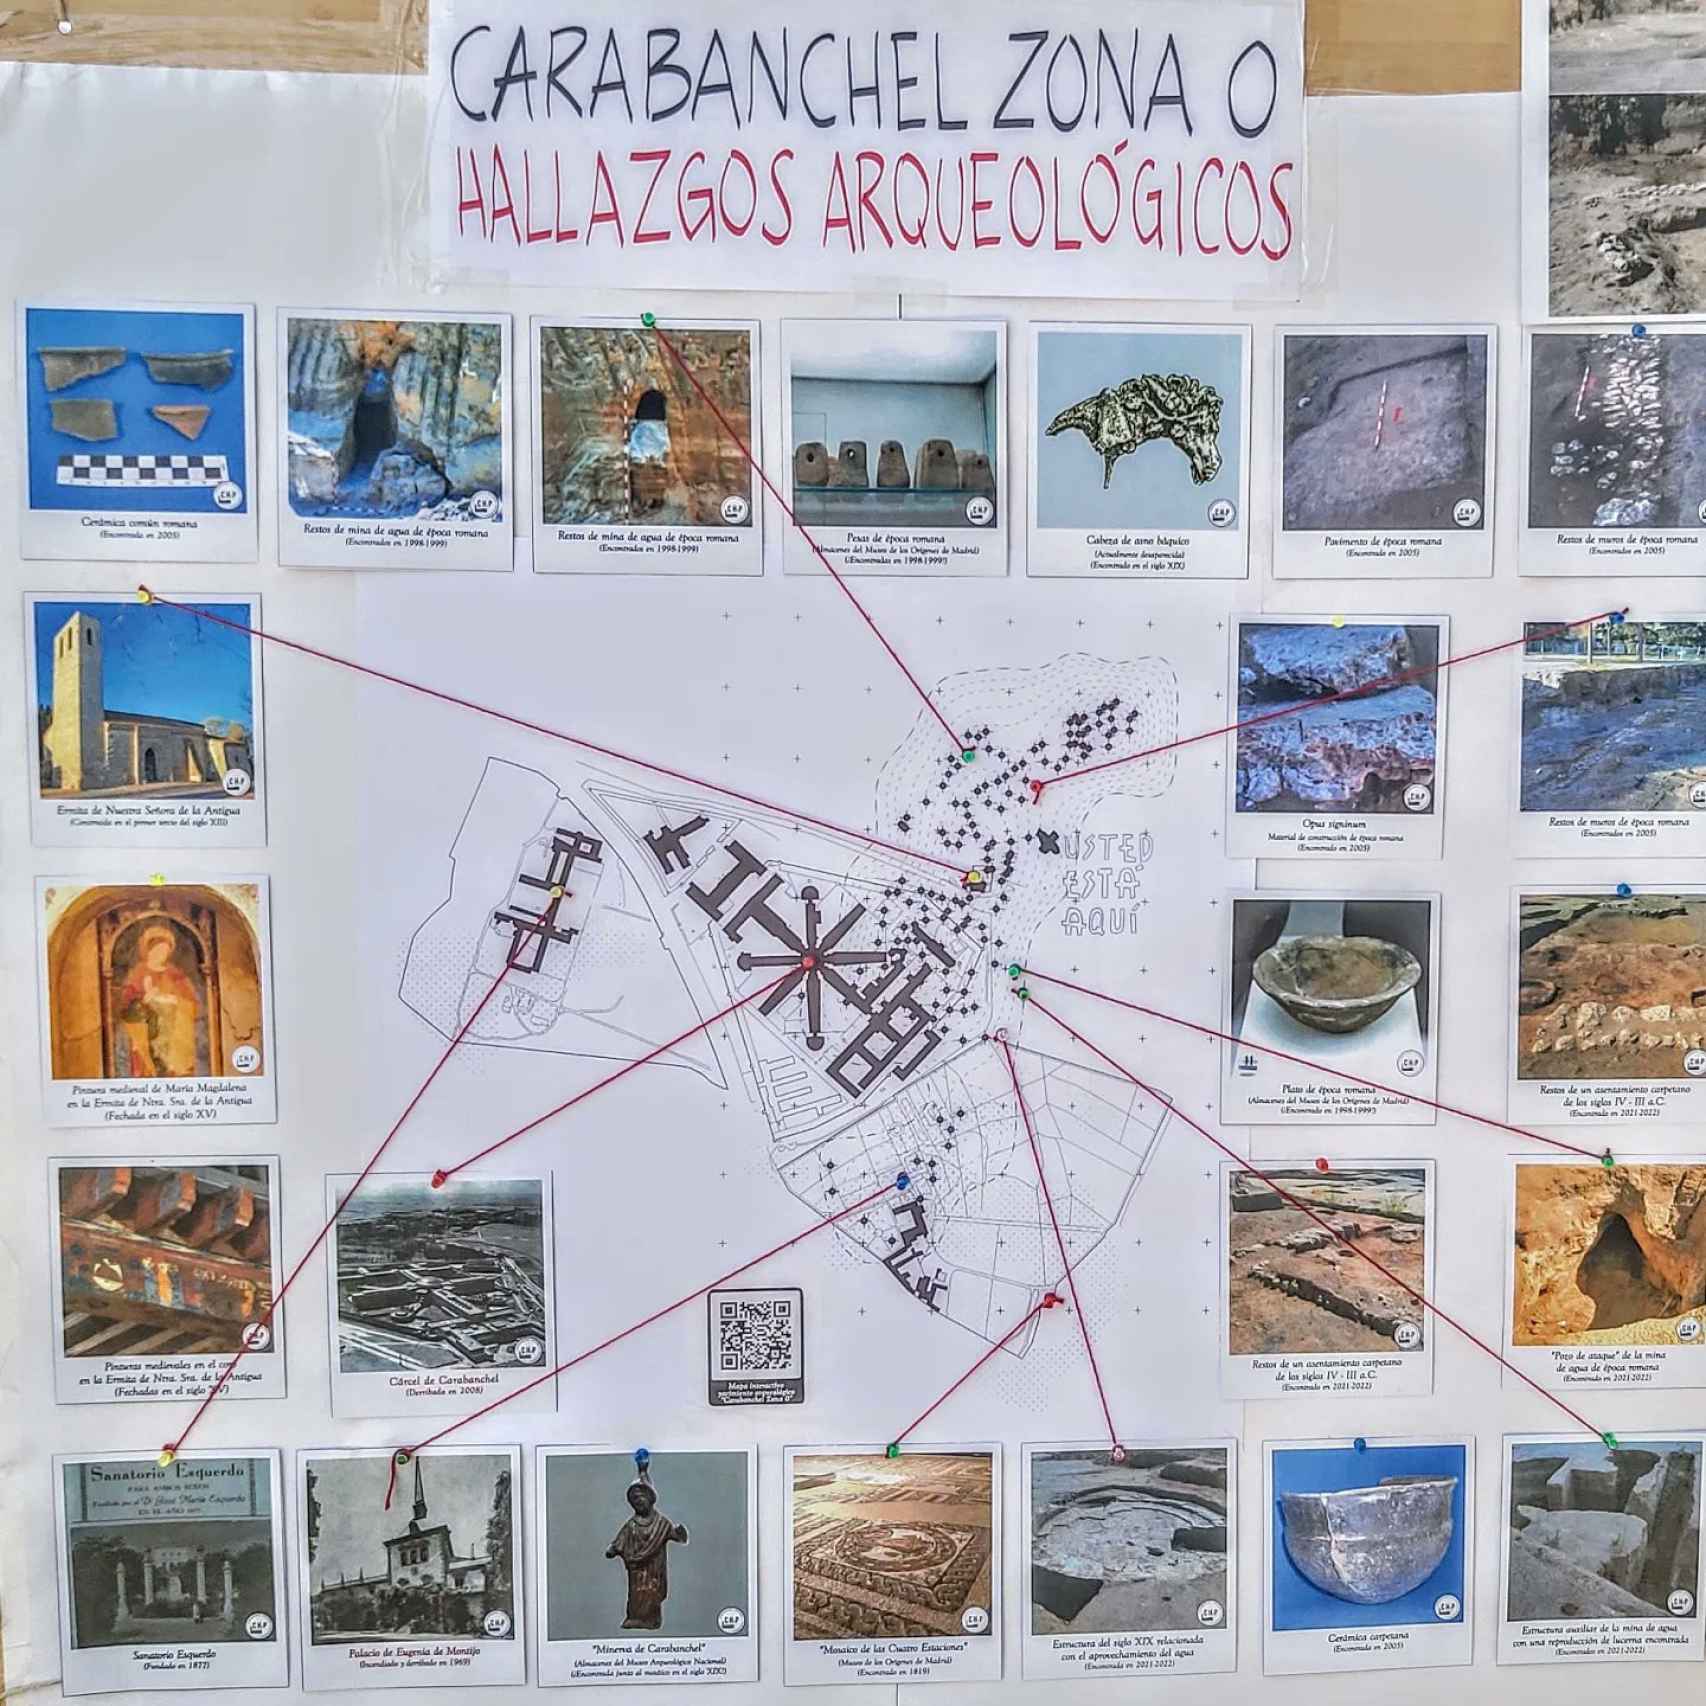 Mapa creado por la asociación Carabanchel Historia y Patrimonio con los hallazgos arqueológicos en el yacimiento.